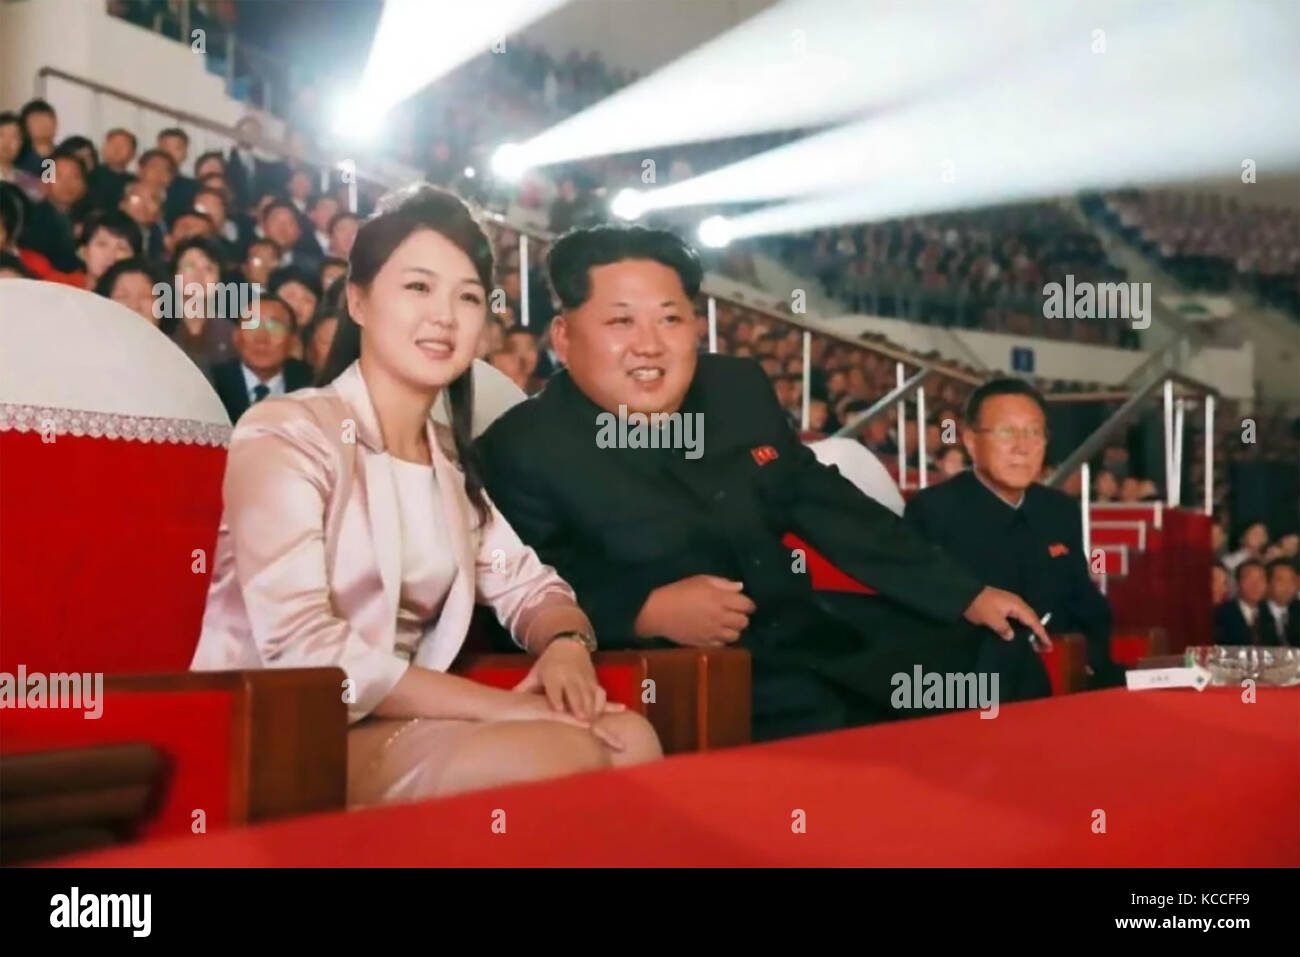 KIM Jong-Un chef de la Corée du Nord avec son épouse Ri Sol-ju dans une photo officielle publiée en 2017 par la Corée du Nord (KCNA Central News Agency). Banque D'Images